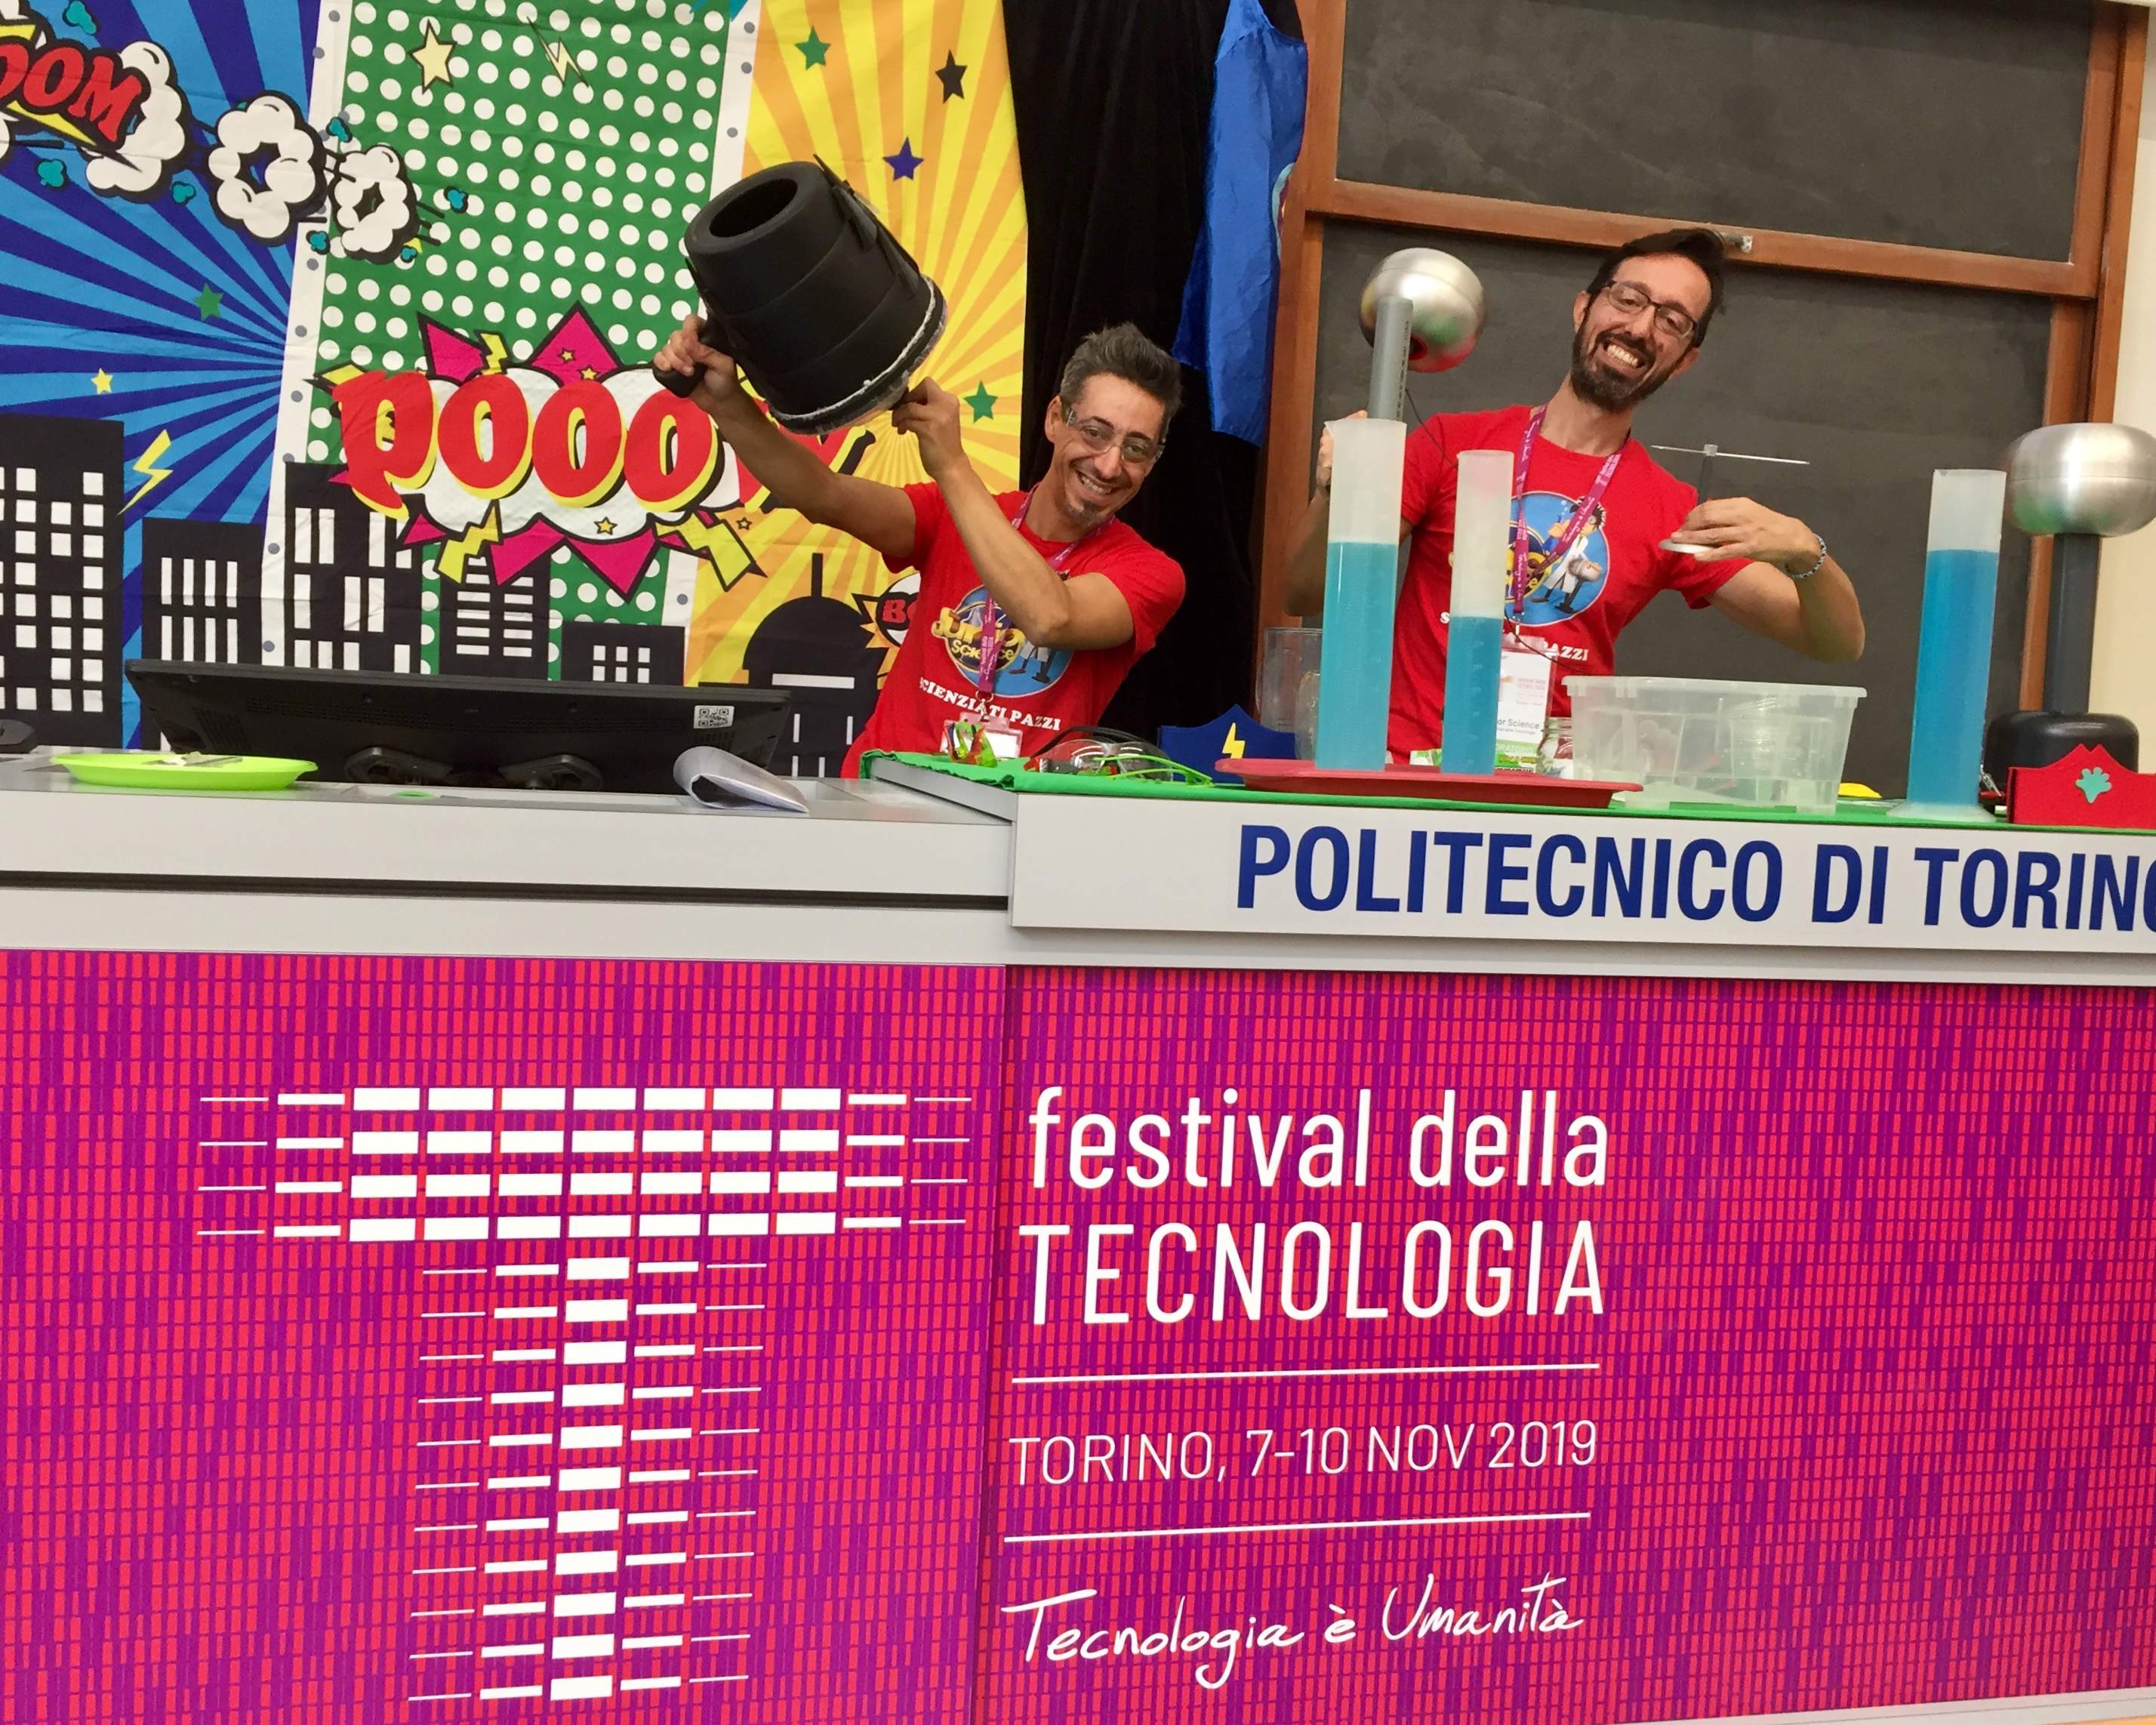 Festival della tecnologia Torino esperimenti scientifici per bambini